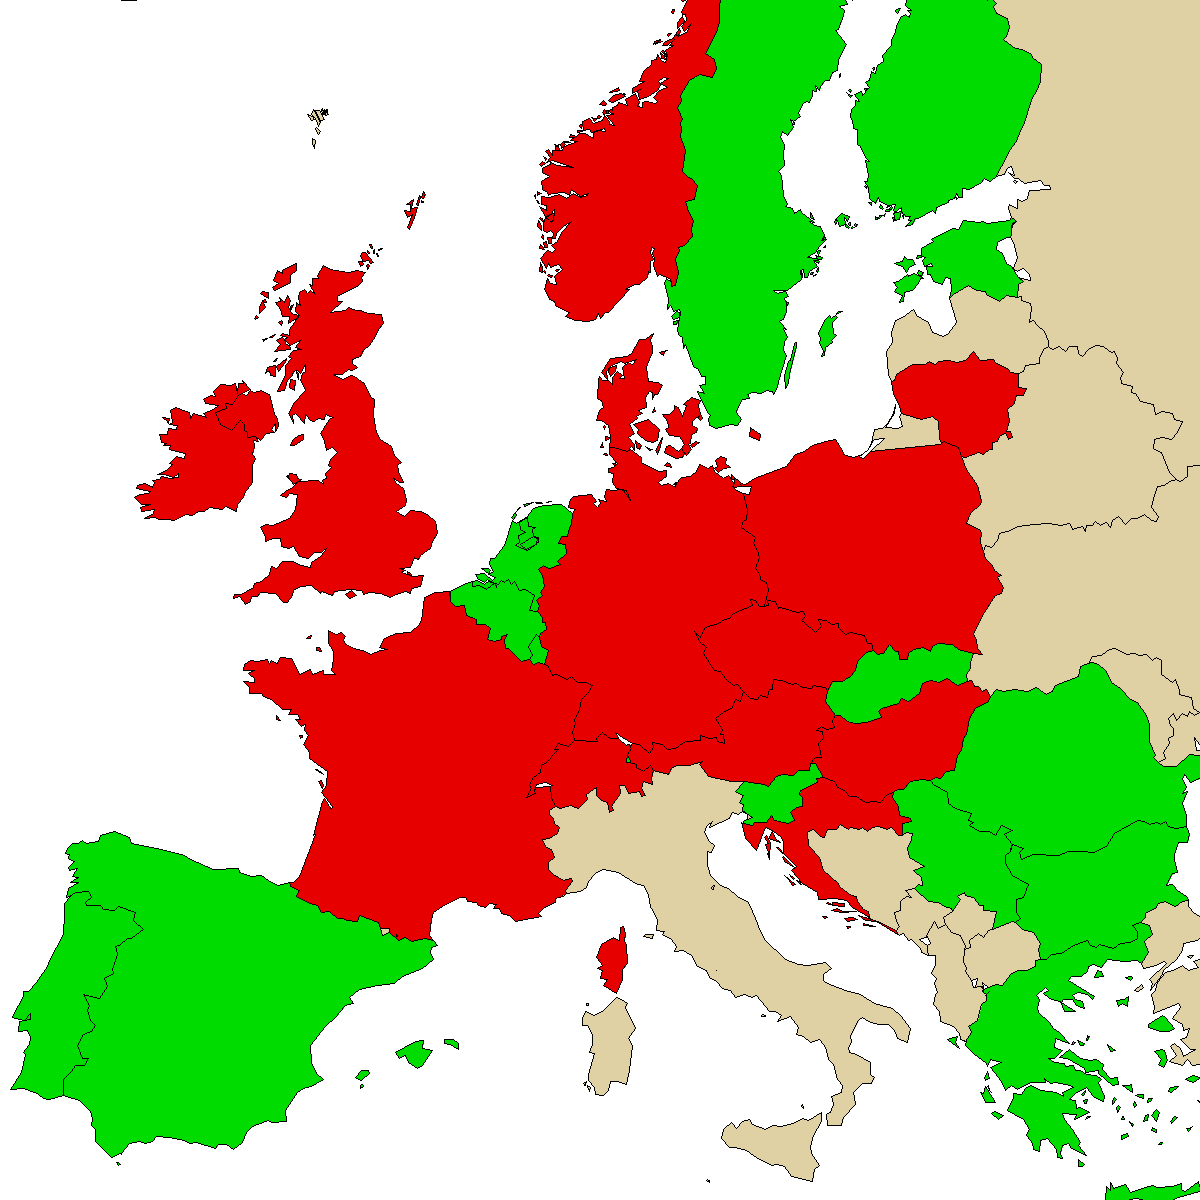 carte d'information légale pour notre produit a-PiHP, vert sont des pays sans interdiction, rouge avec interdiction, gris inconnu